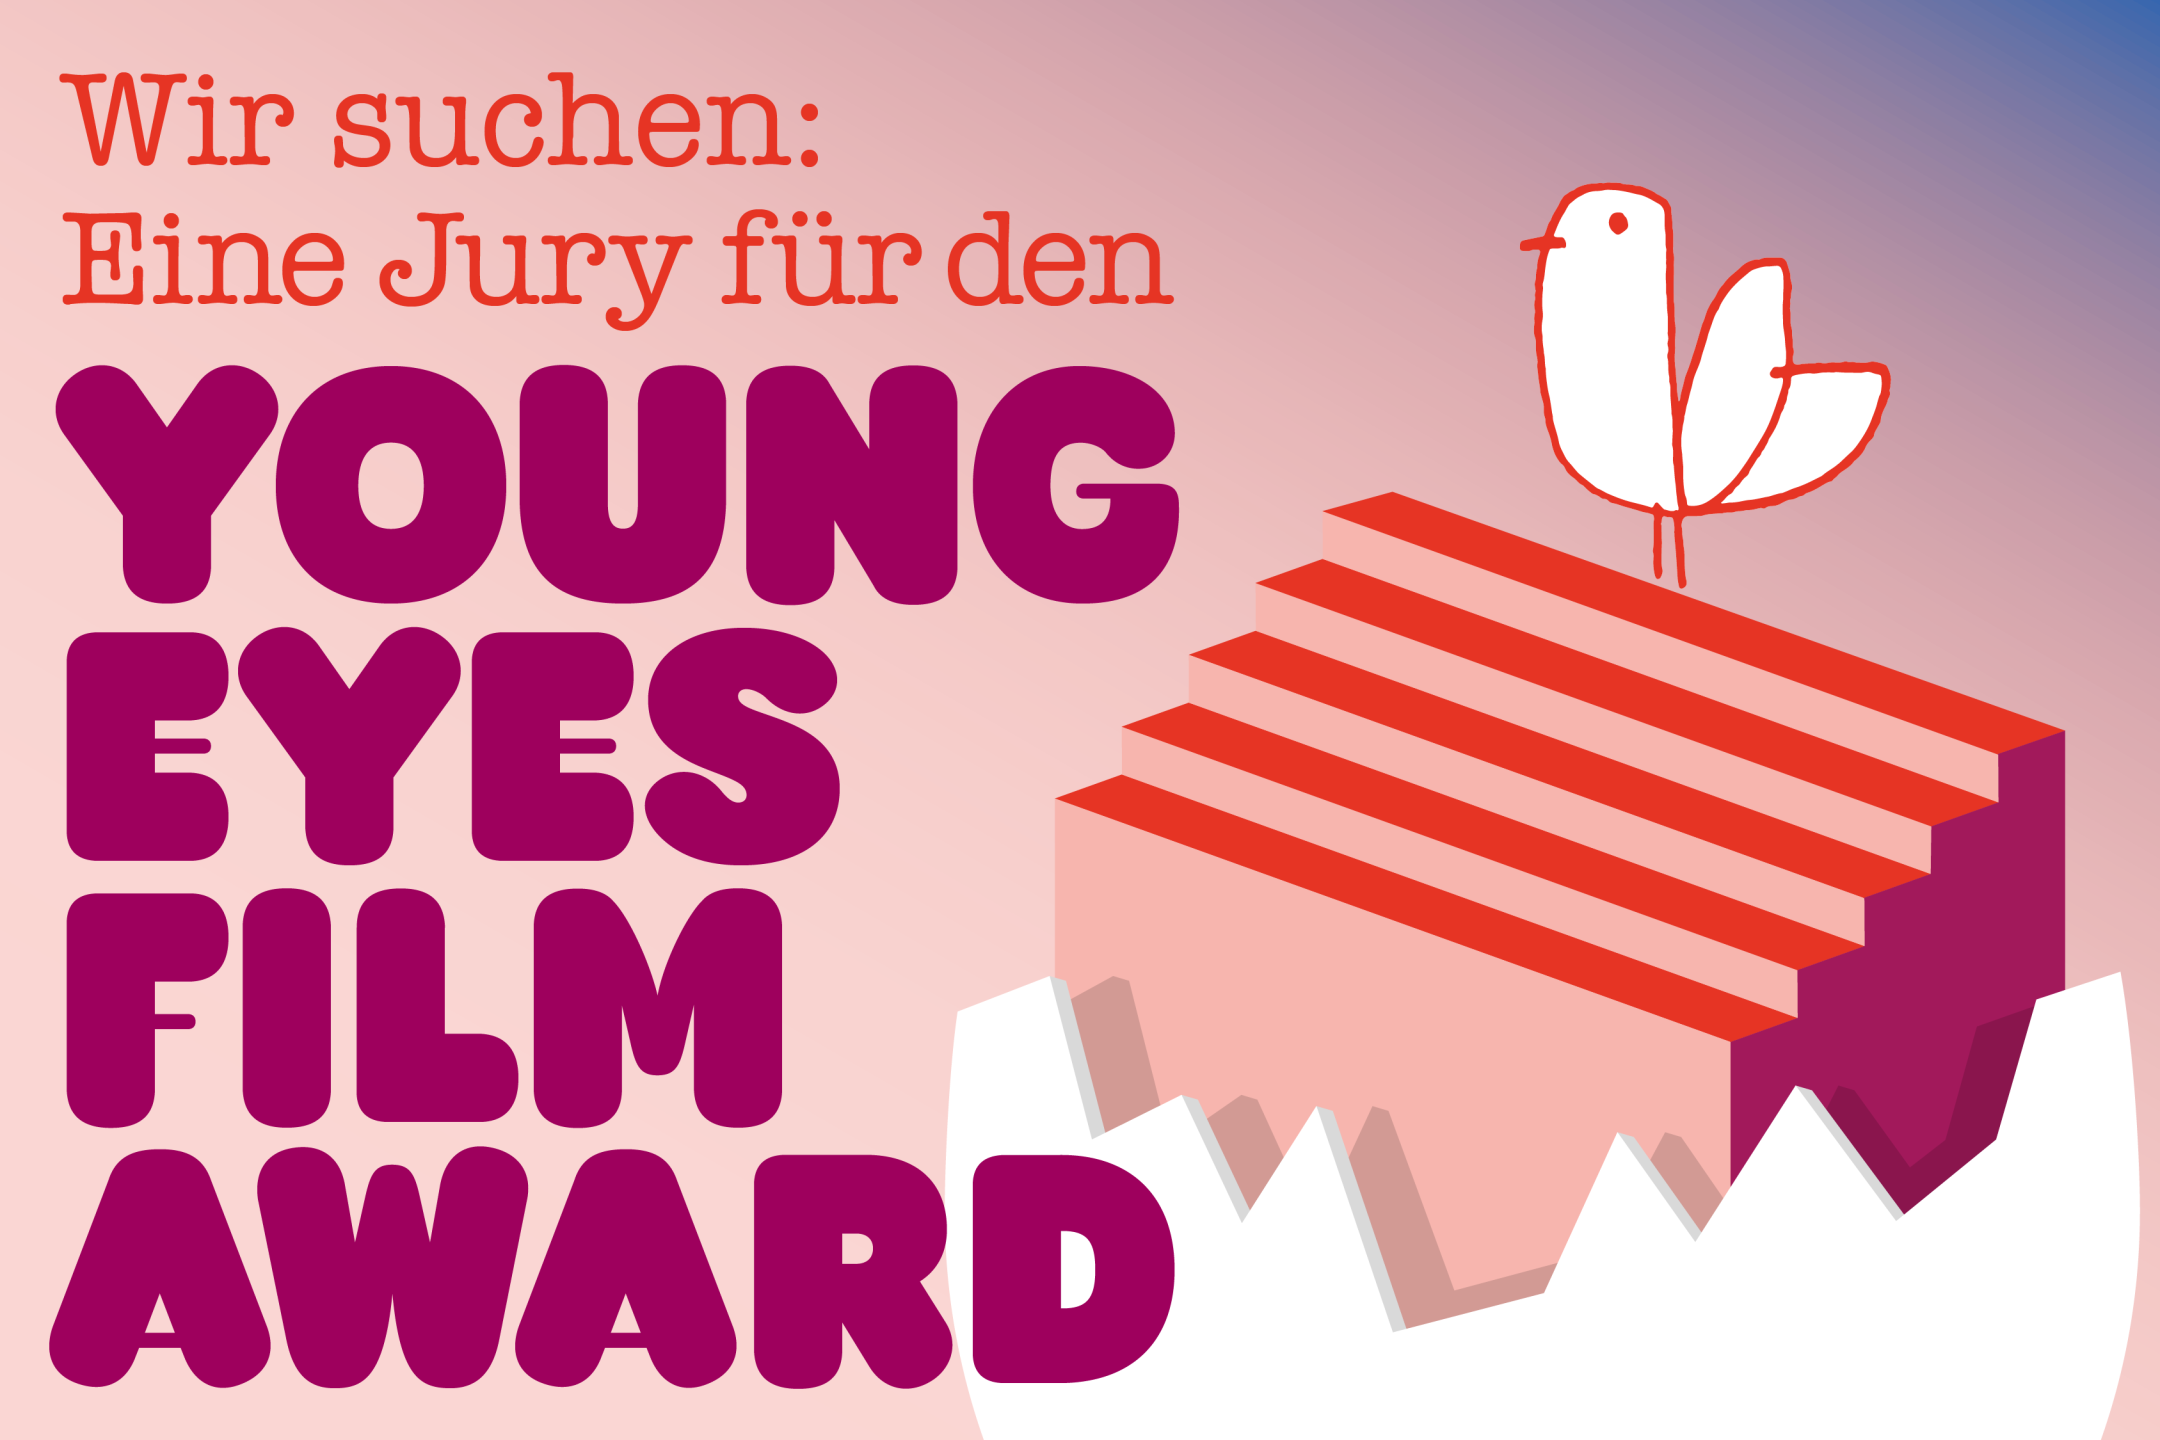 Textgrafik. Eine Taube sitzt auf einer Treppe, die aus einer Eierschale emporsteigt. Daneben der Text: Wir suchen eine Jury für den Young Eyes Film Award.